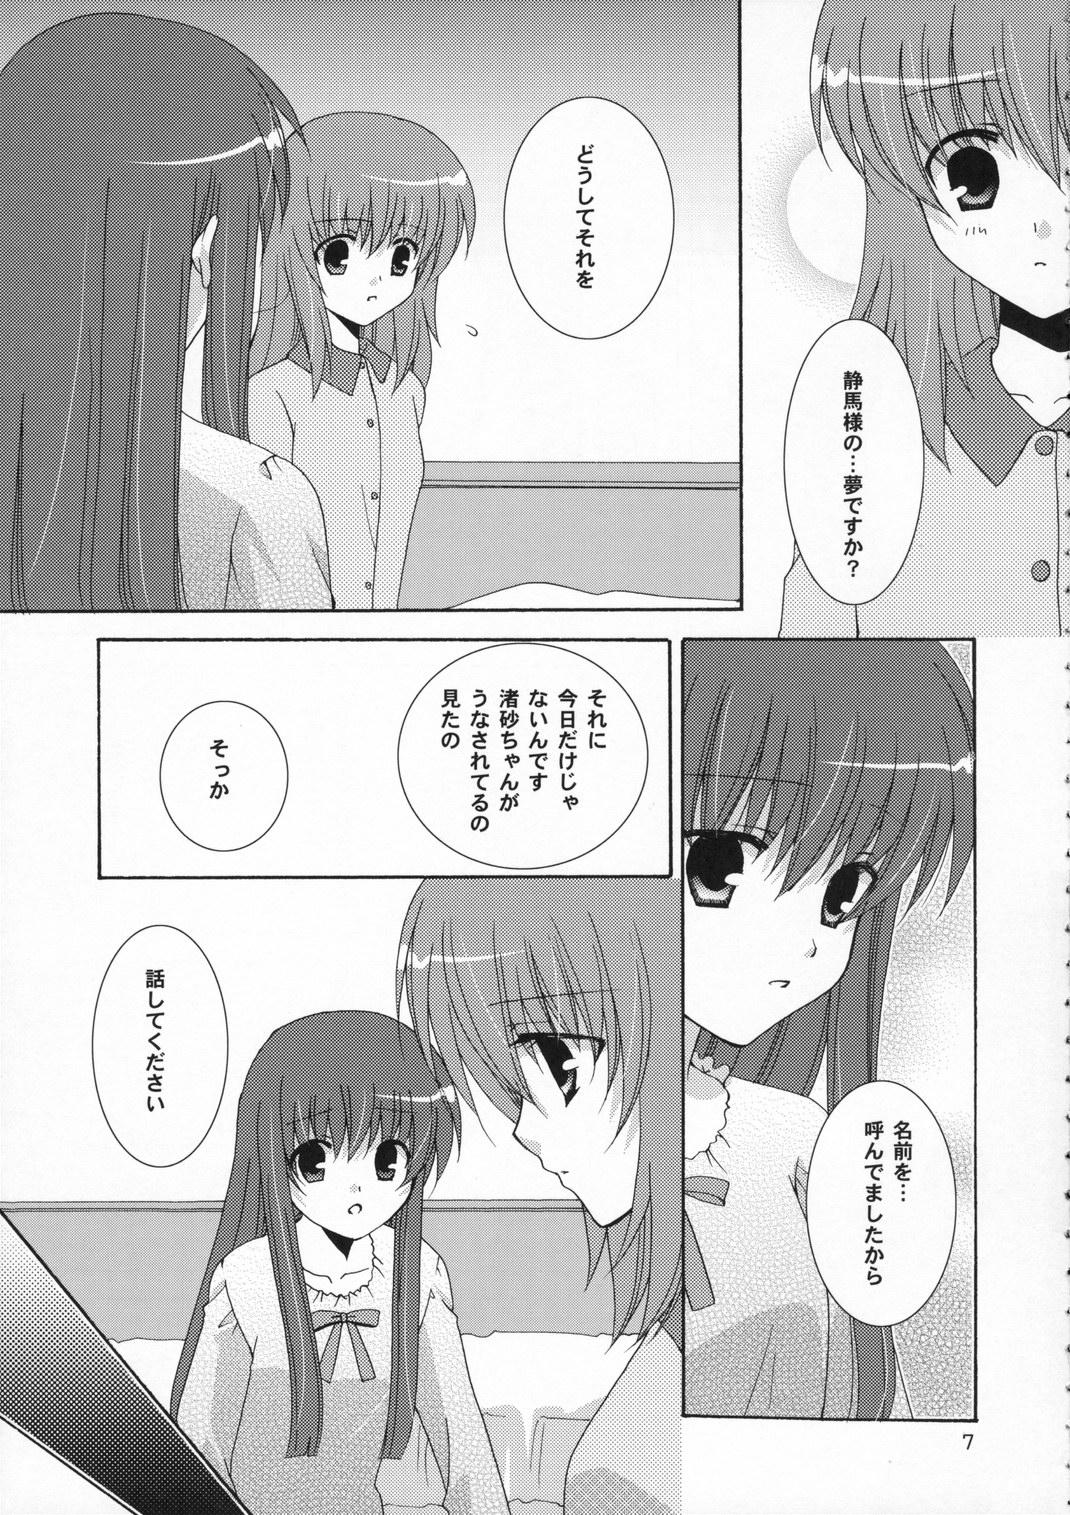 Fetiche Ichigo no Kimochi - Strawberry panic Job - Page 7